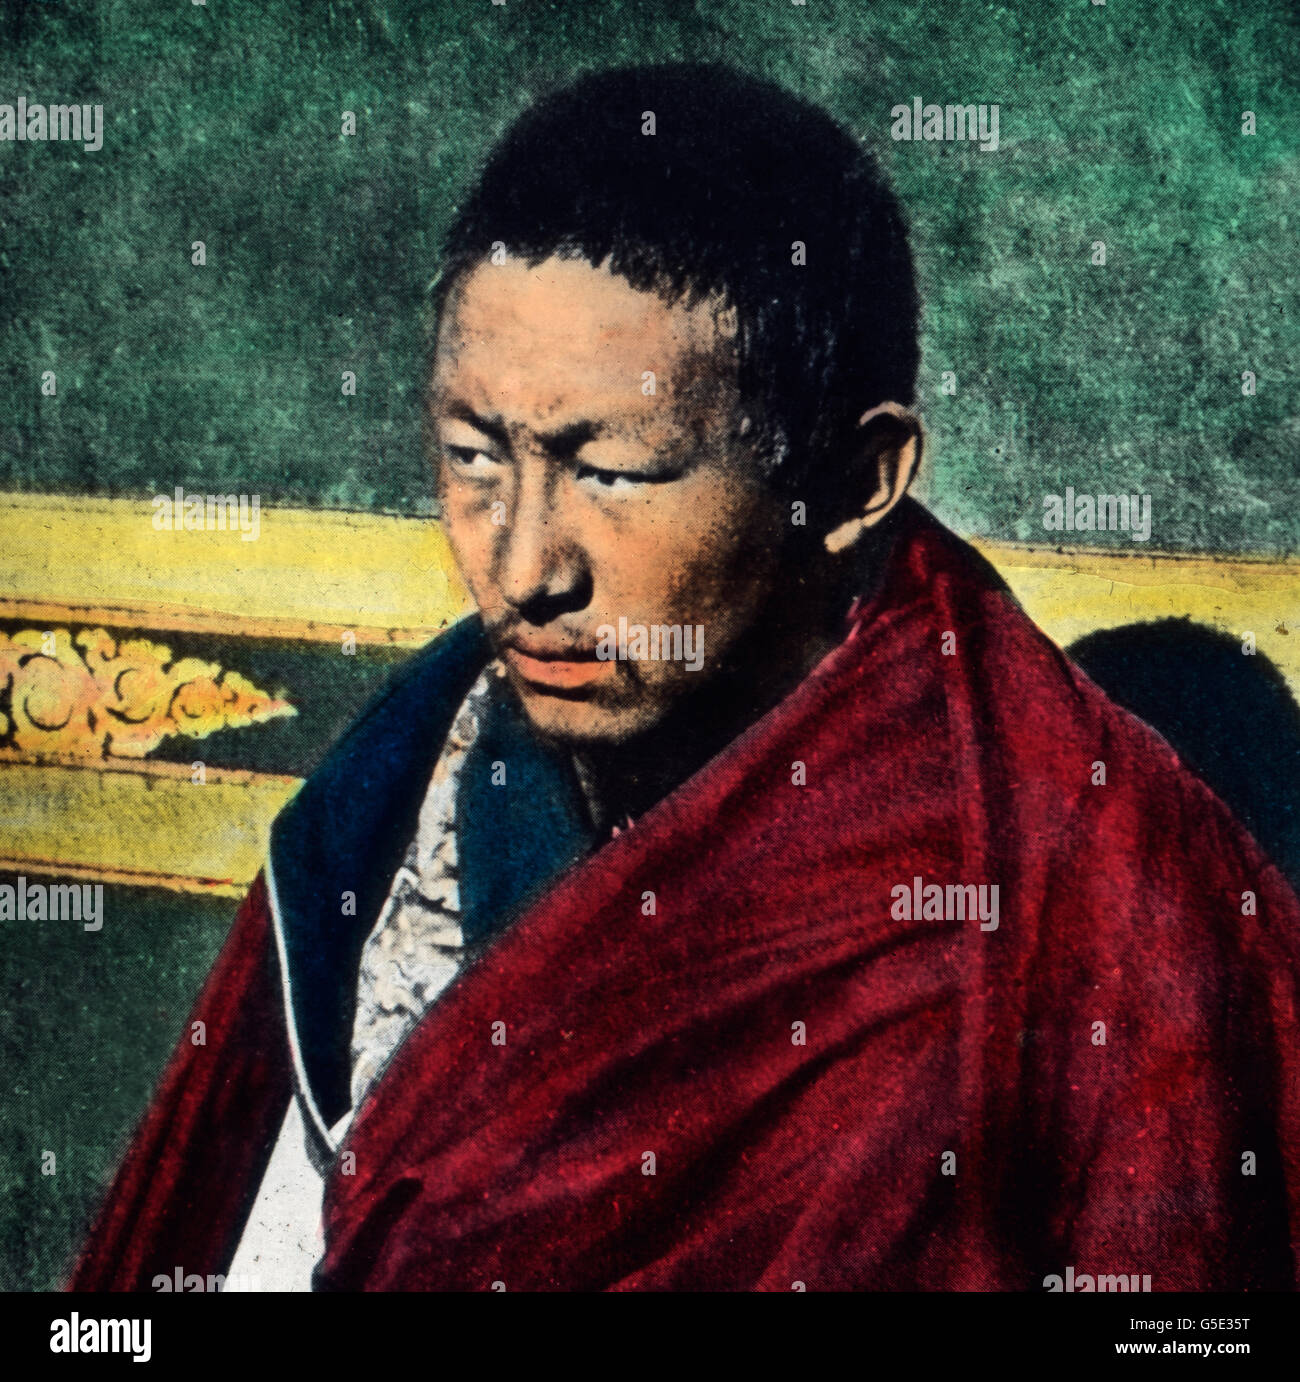 The tashi lama immagini e fotografie stock ad alta risoluzione - Alamy